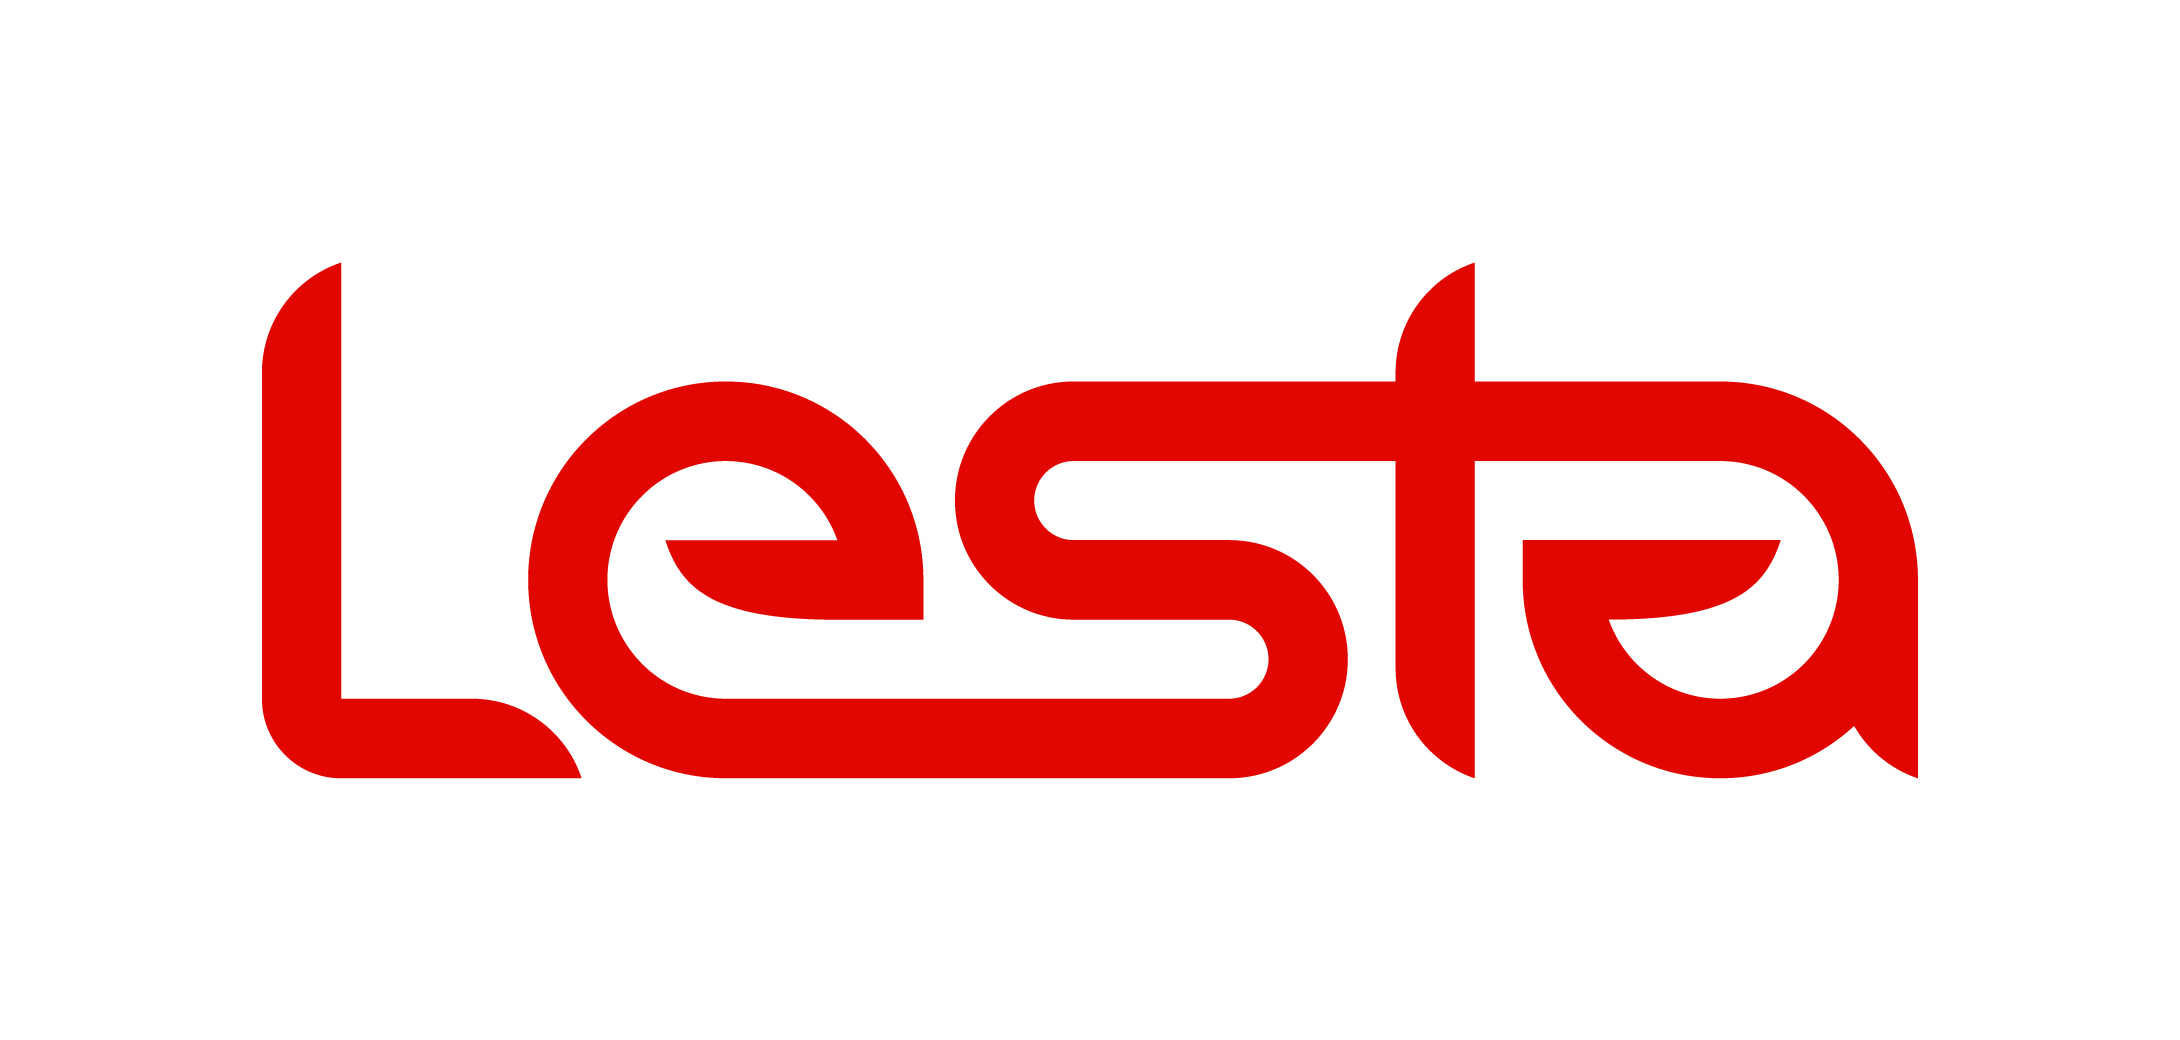 Ru lesta clans. Lesta логотип. Леста студио. Леста студио логотип. Логотип Леста геймс.